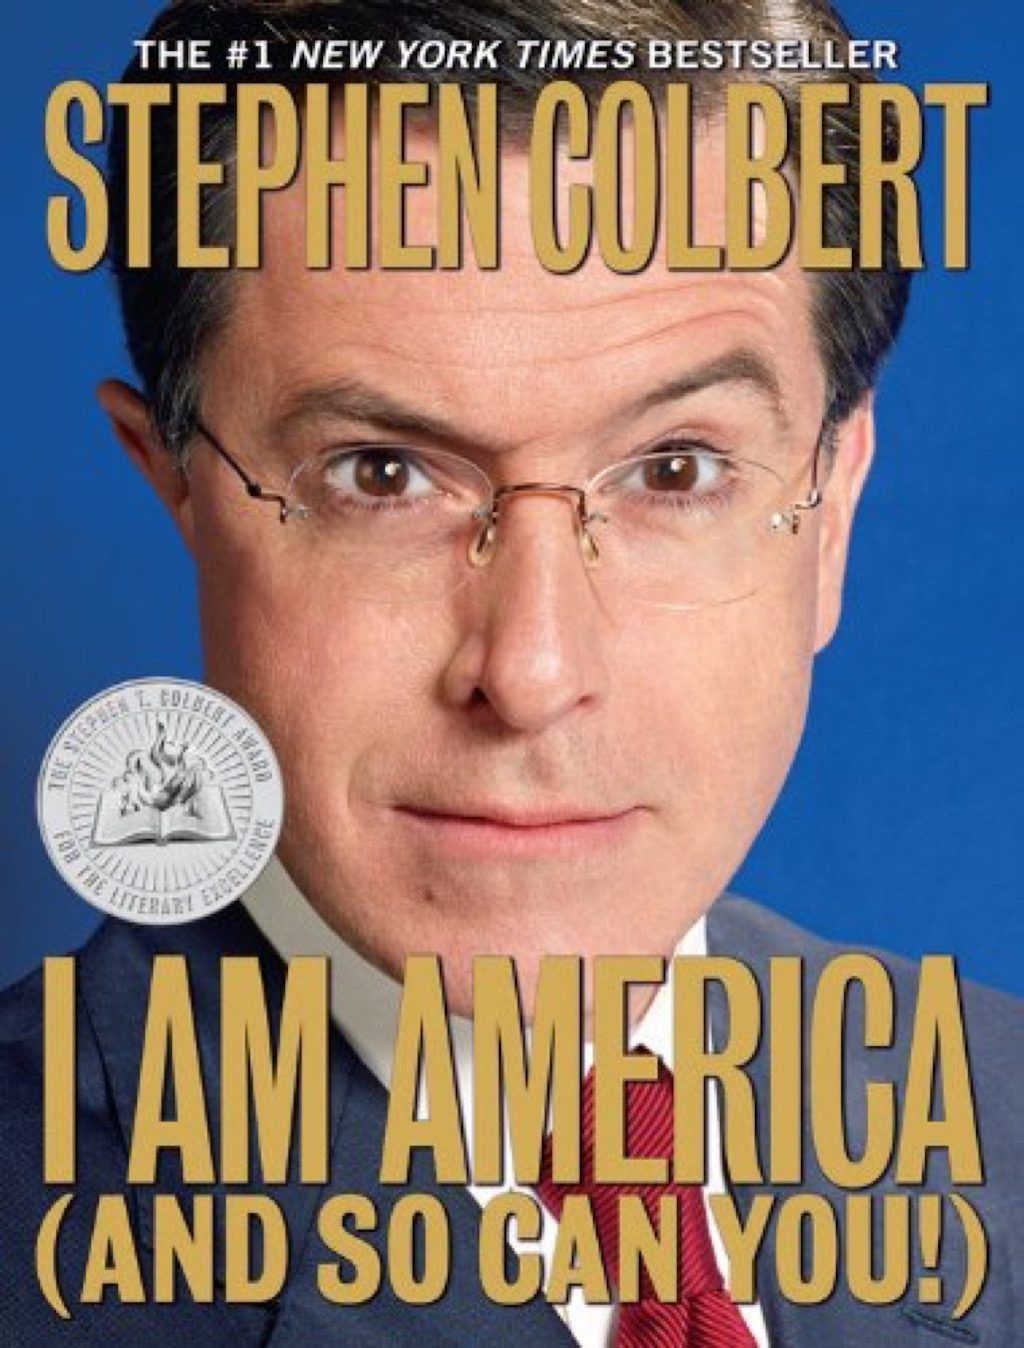 Najzabawniejsze książki o gwiazdach Stephena Colberta